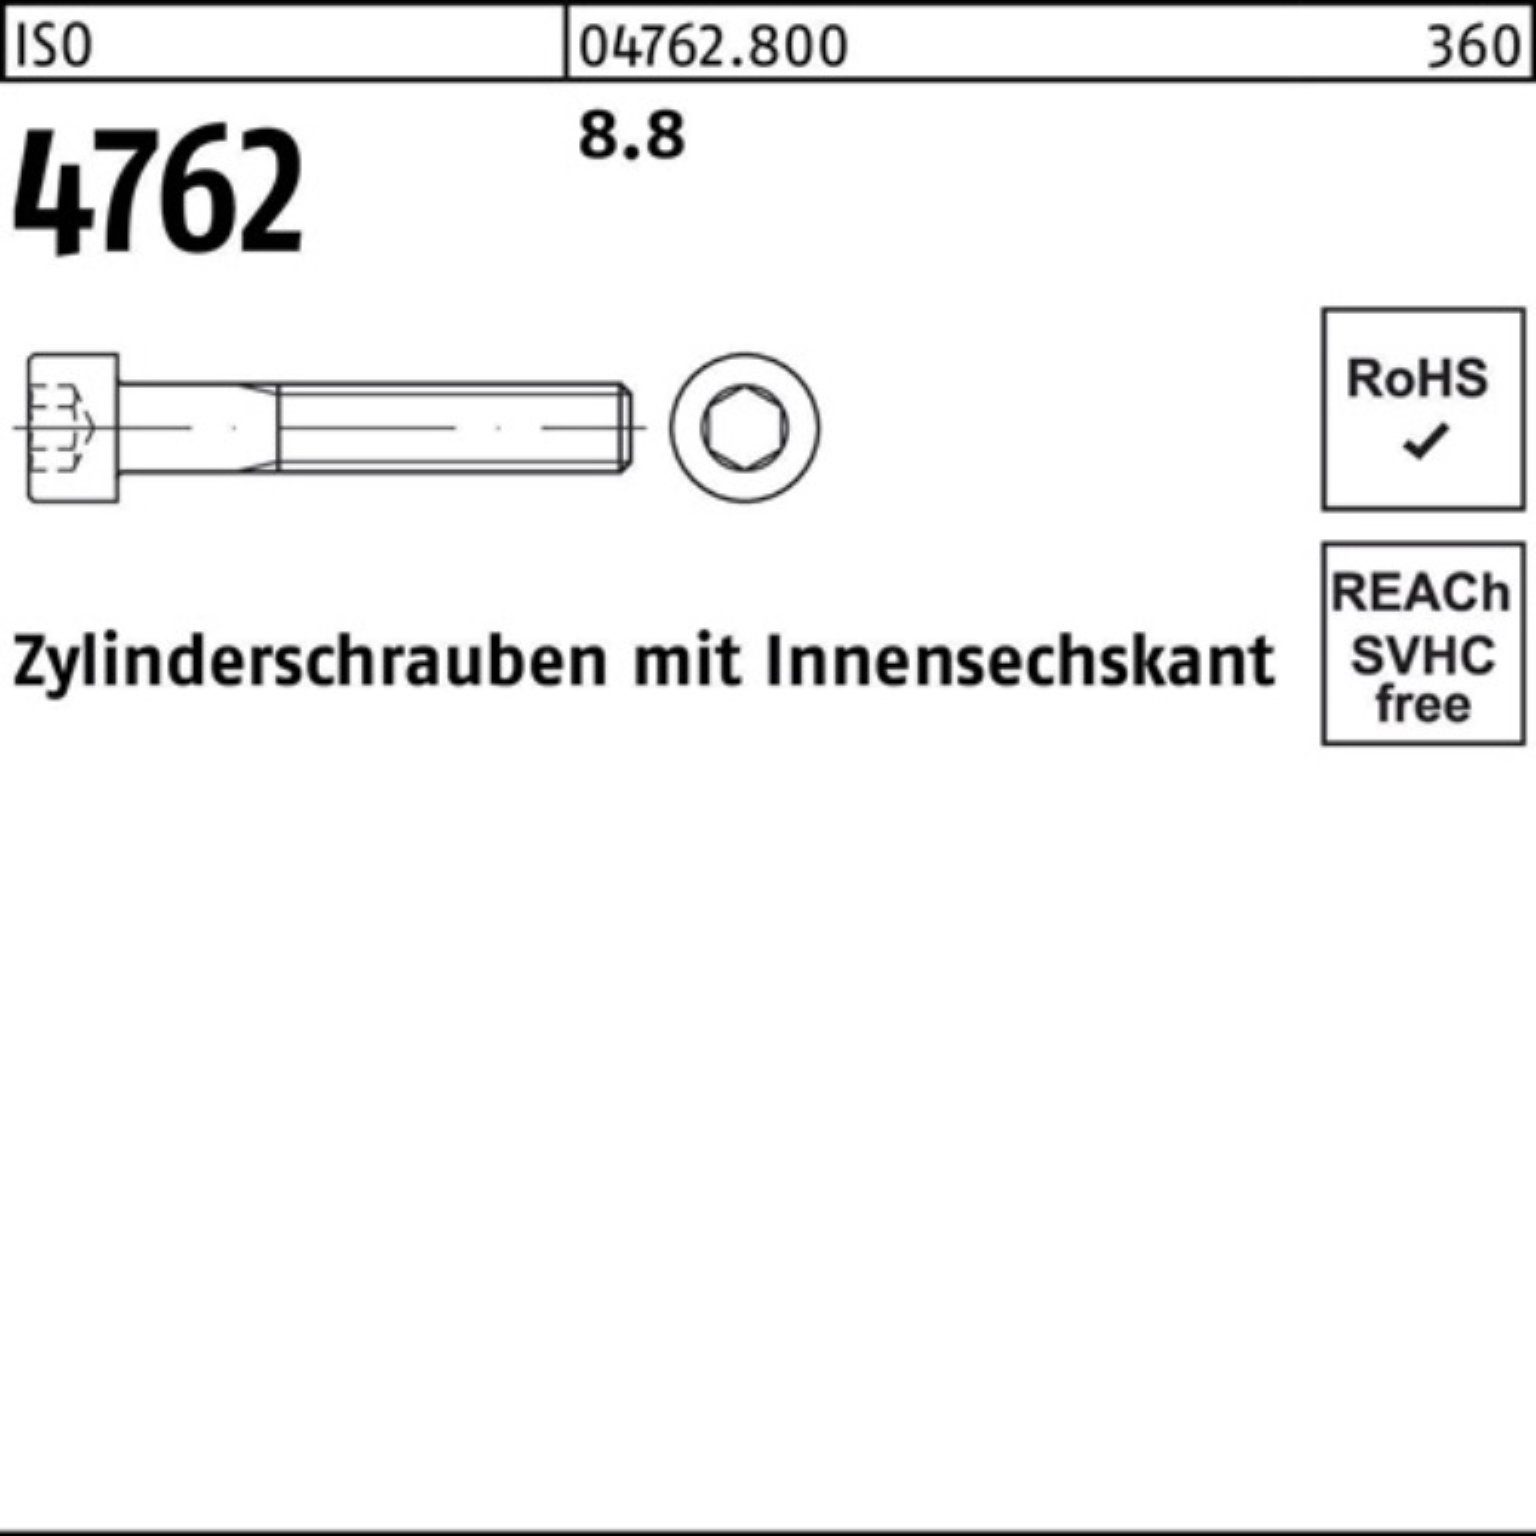 Reyher Zylinderschraube Zylinderschraube 100er I 4762 8.8 40 M20x ISO Stück Pack Innen-6kt 25